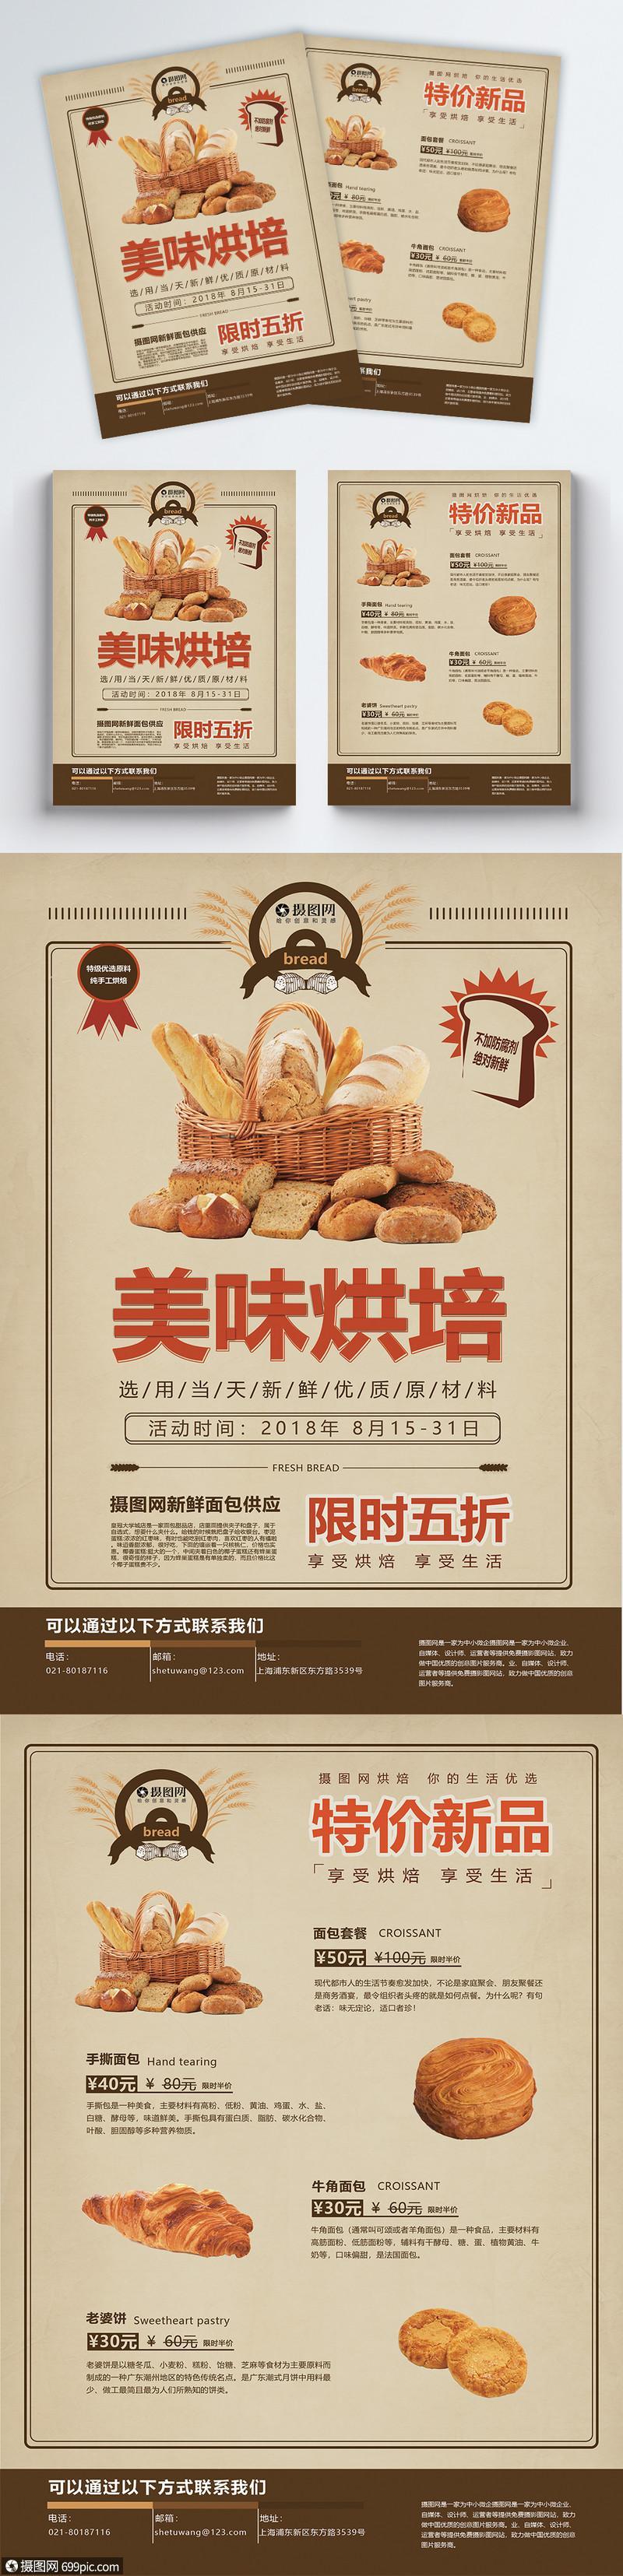 美味烘培坊面包宣传单